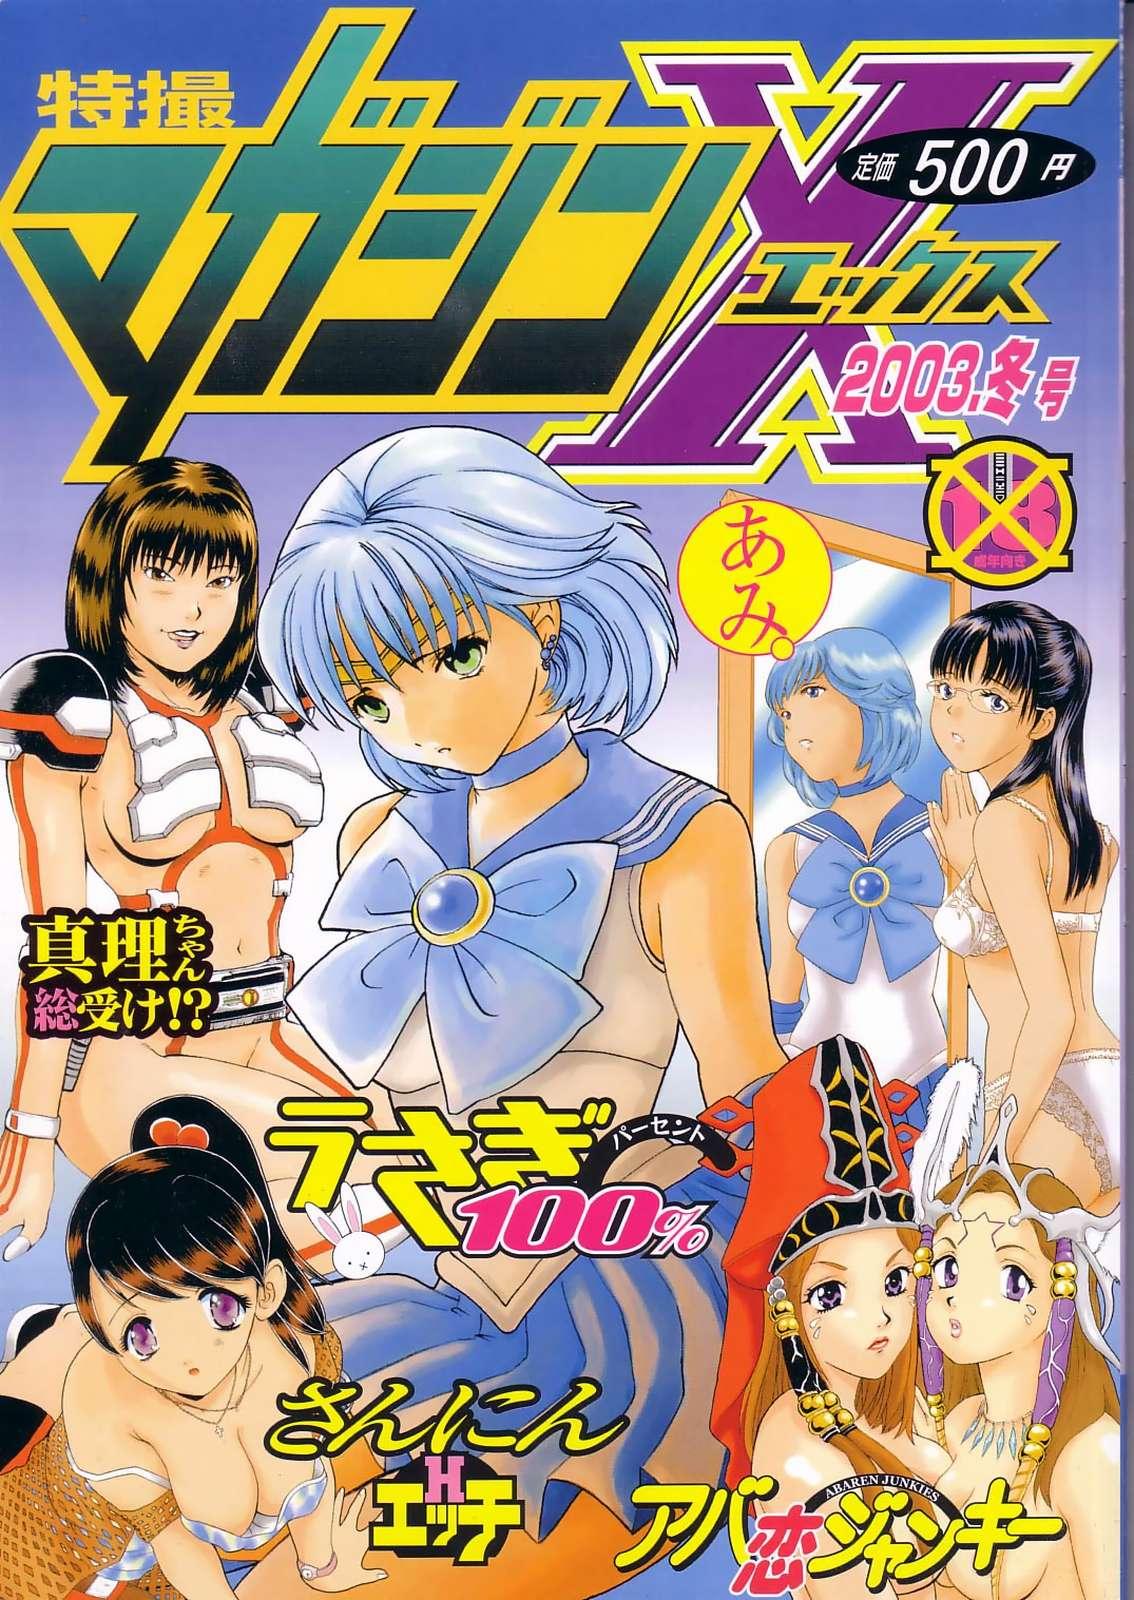 Chilena Tokusatsu Magazine x 2003 Fuyu Gou - Sailor moon Ichigo 100 Gay Brownhair - Picture 1